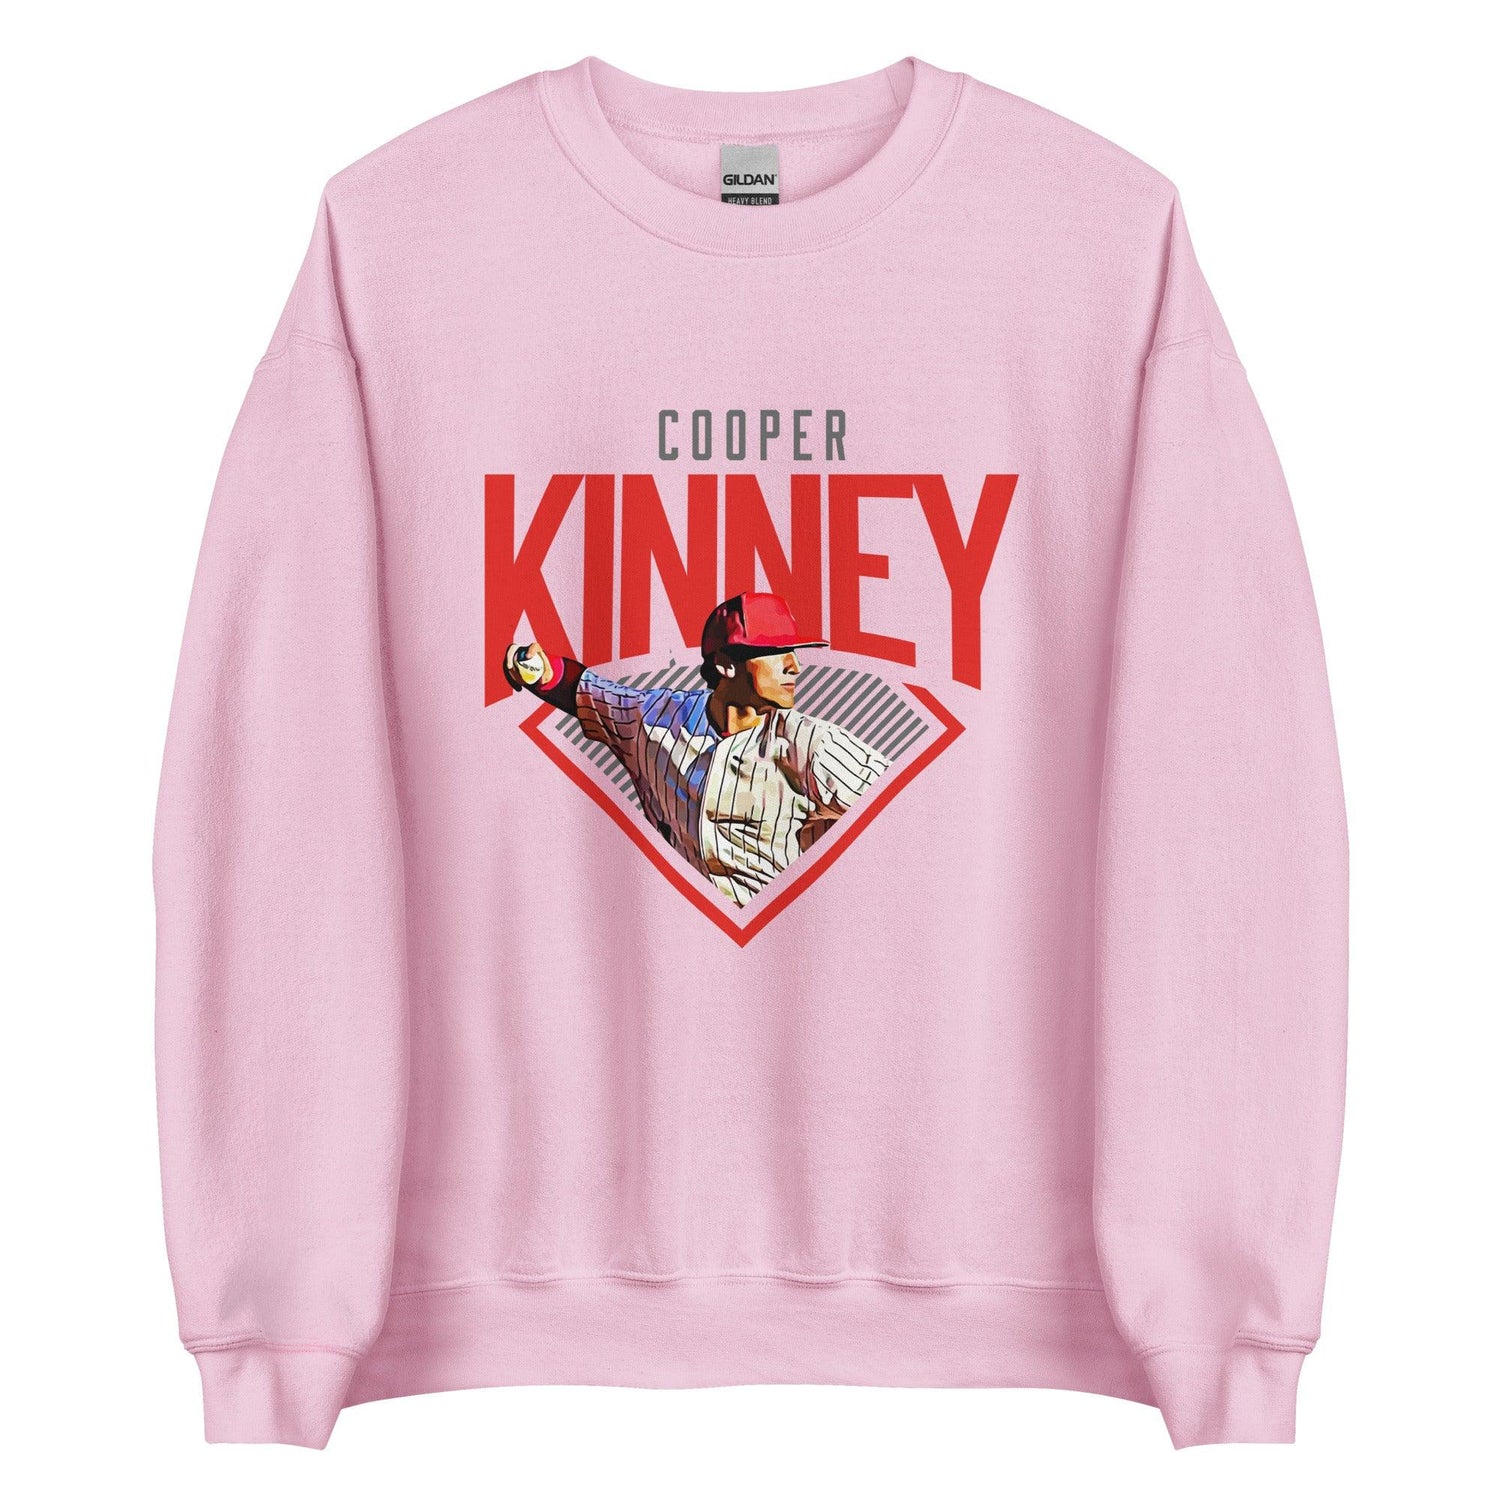 Cooper Kinney "Diamond" Sweatshirt - Fan Arch